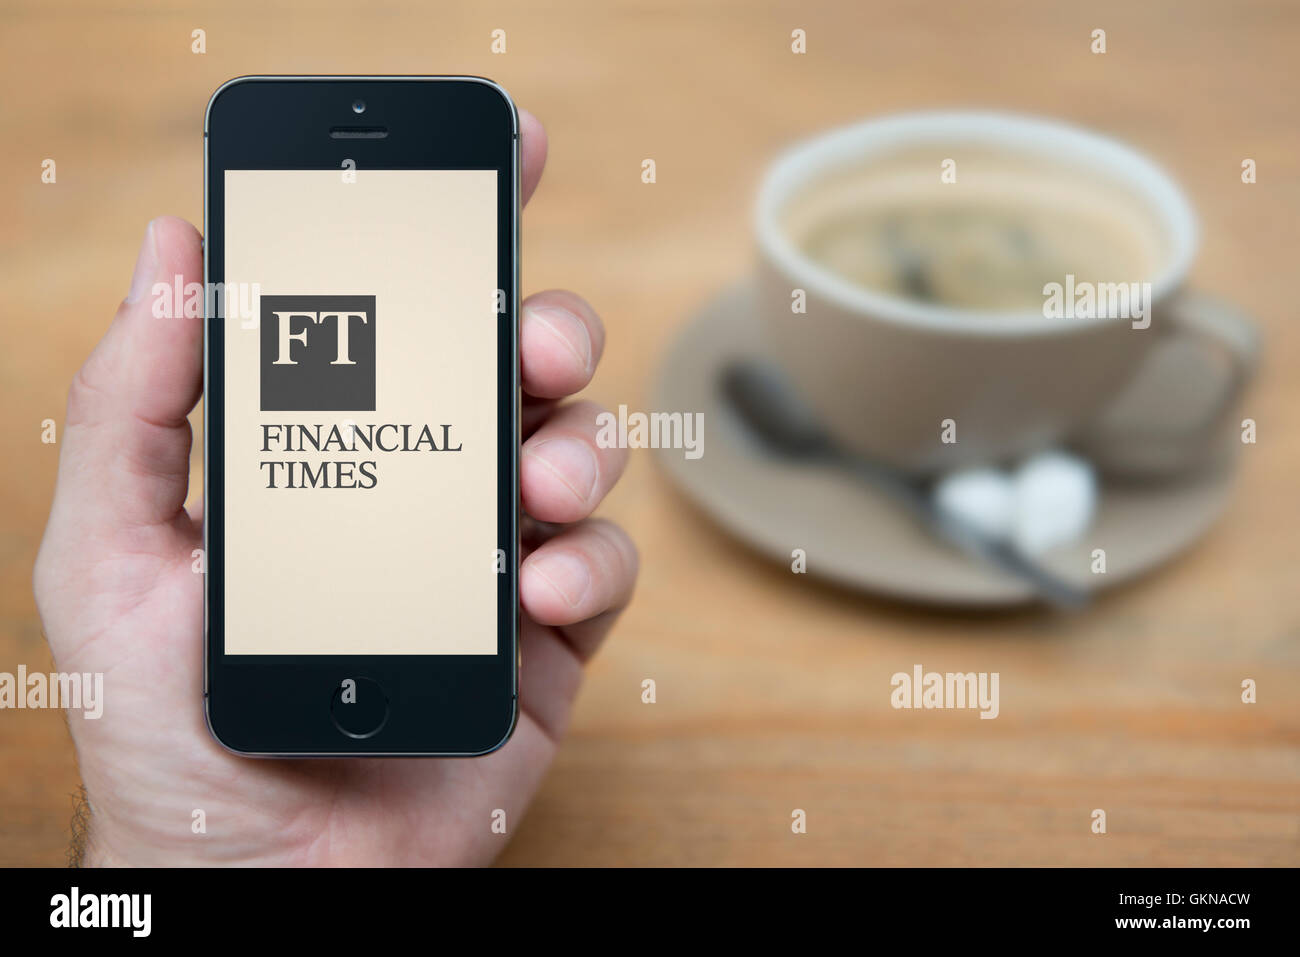 Un uomo guarda al suo iPhone che visualizza il Financial Times logo, mentre sat con una tazza di caffè (solo uso editoriale). Foto Stock